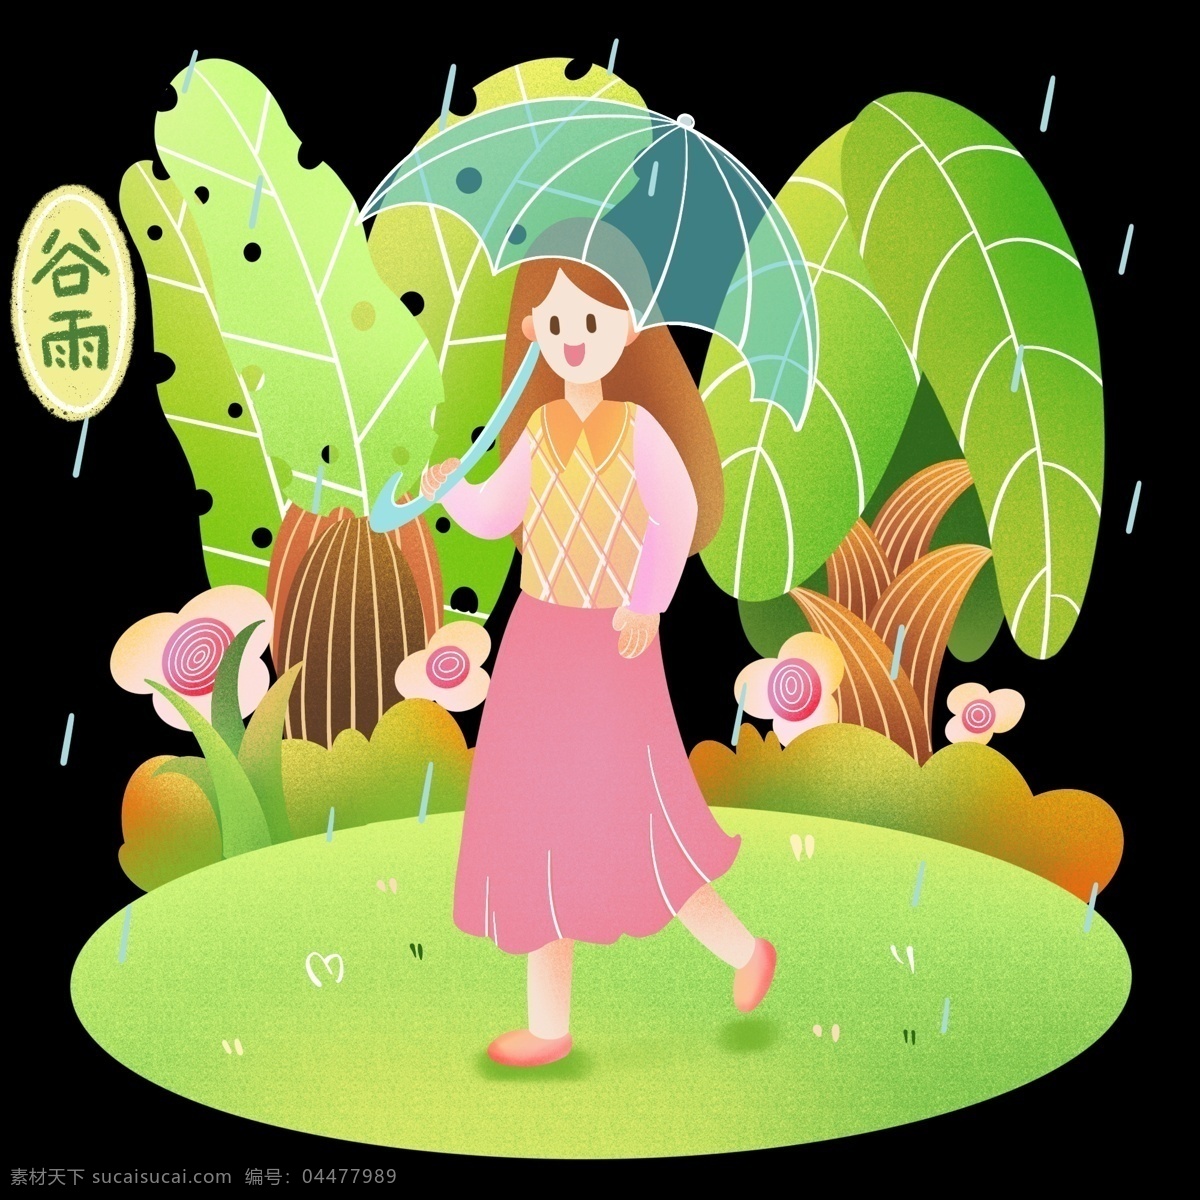 谷雨 打伞 卡通 插画 打伞的女孩 卡通插画 谷雨插画 二十四节气 谷雨的节日 节气 蓝色的雨伞